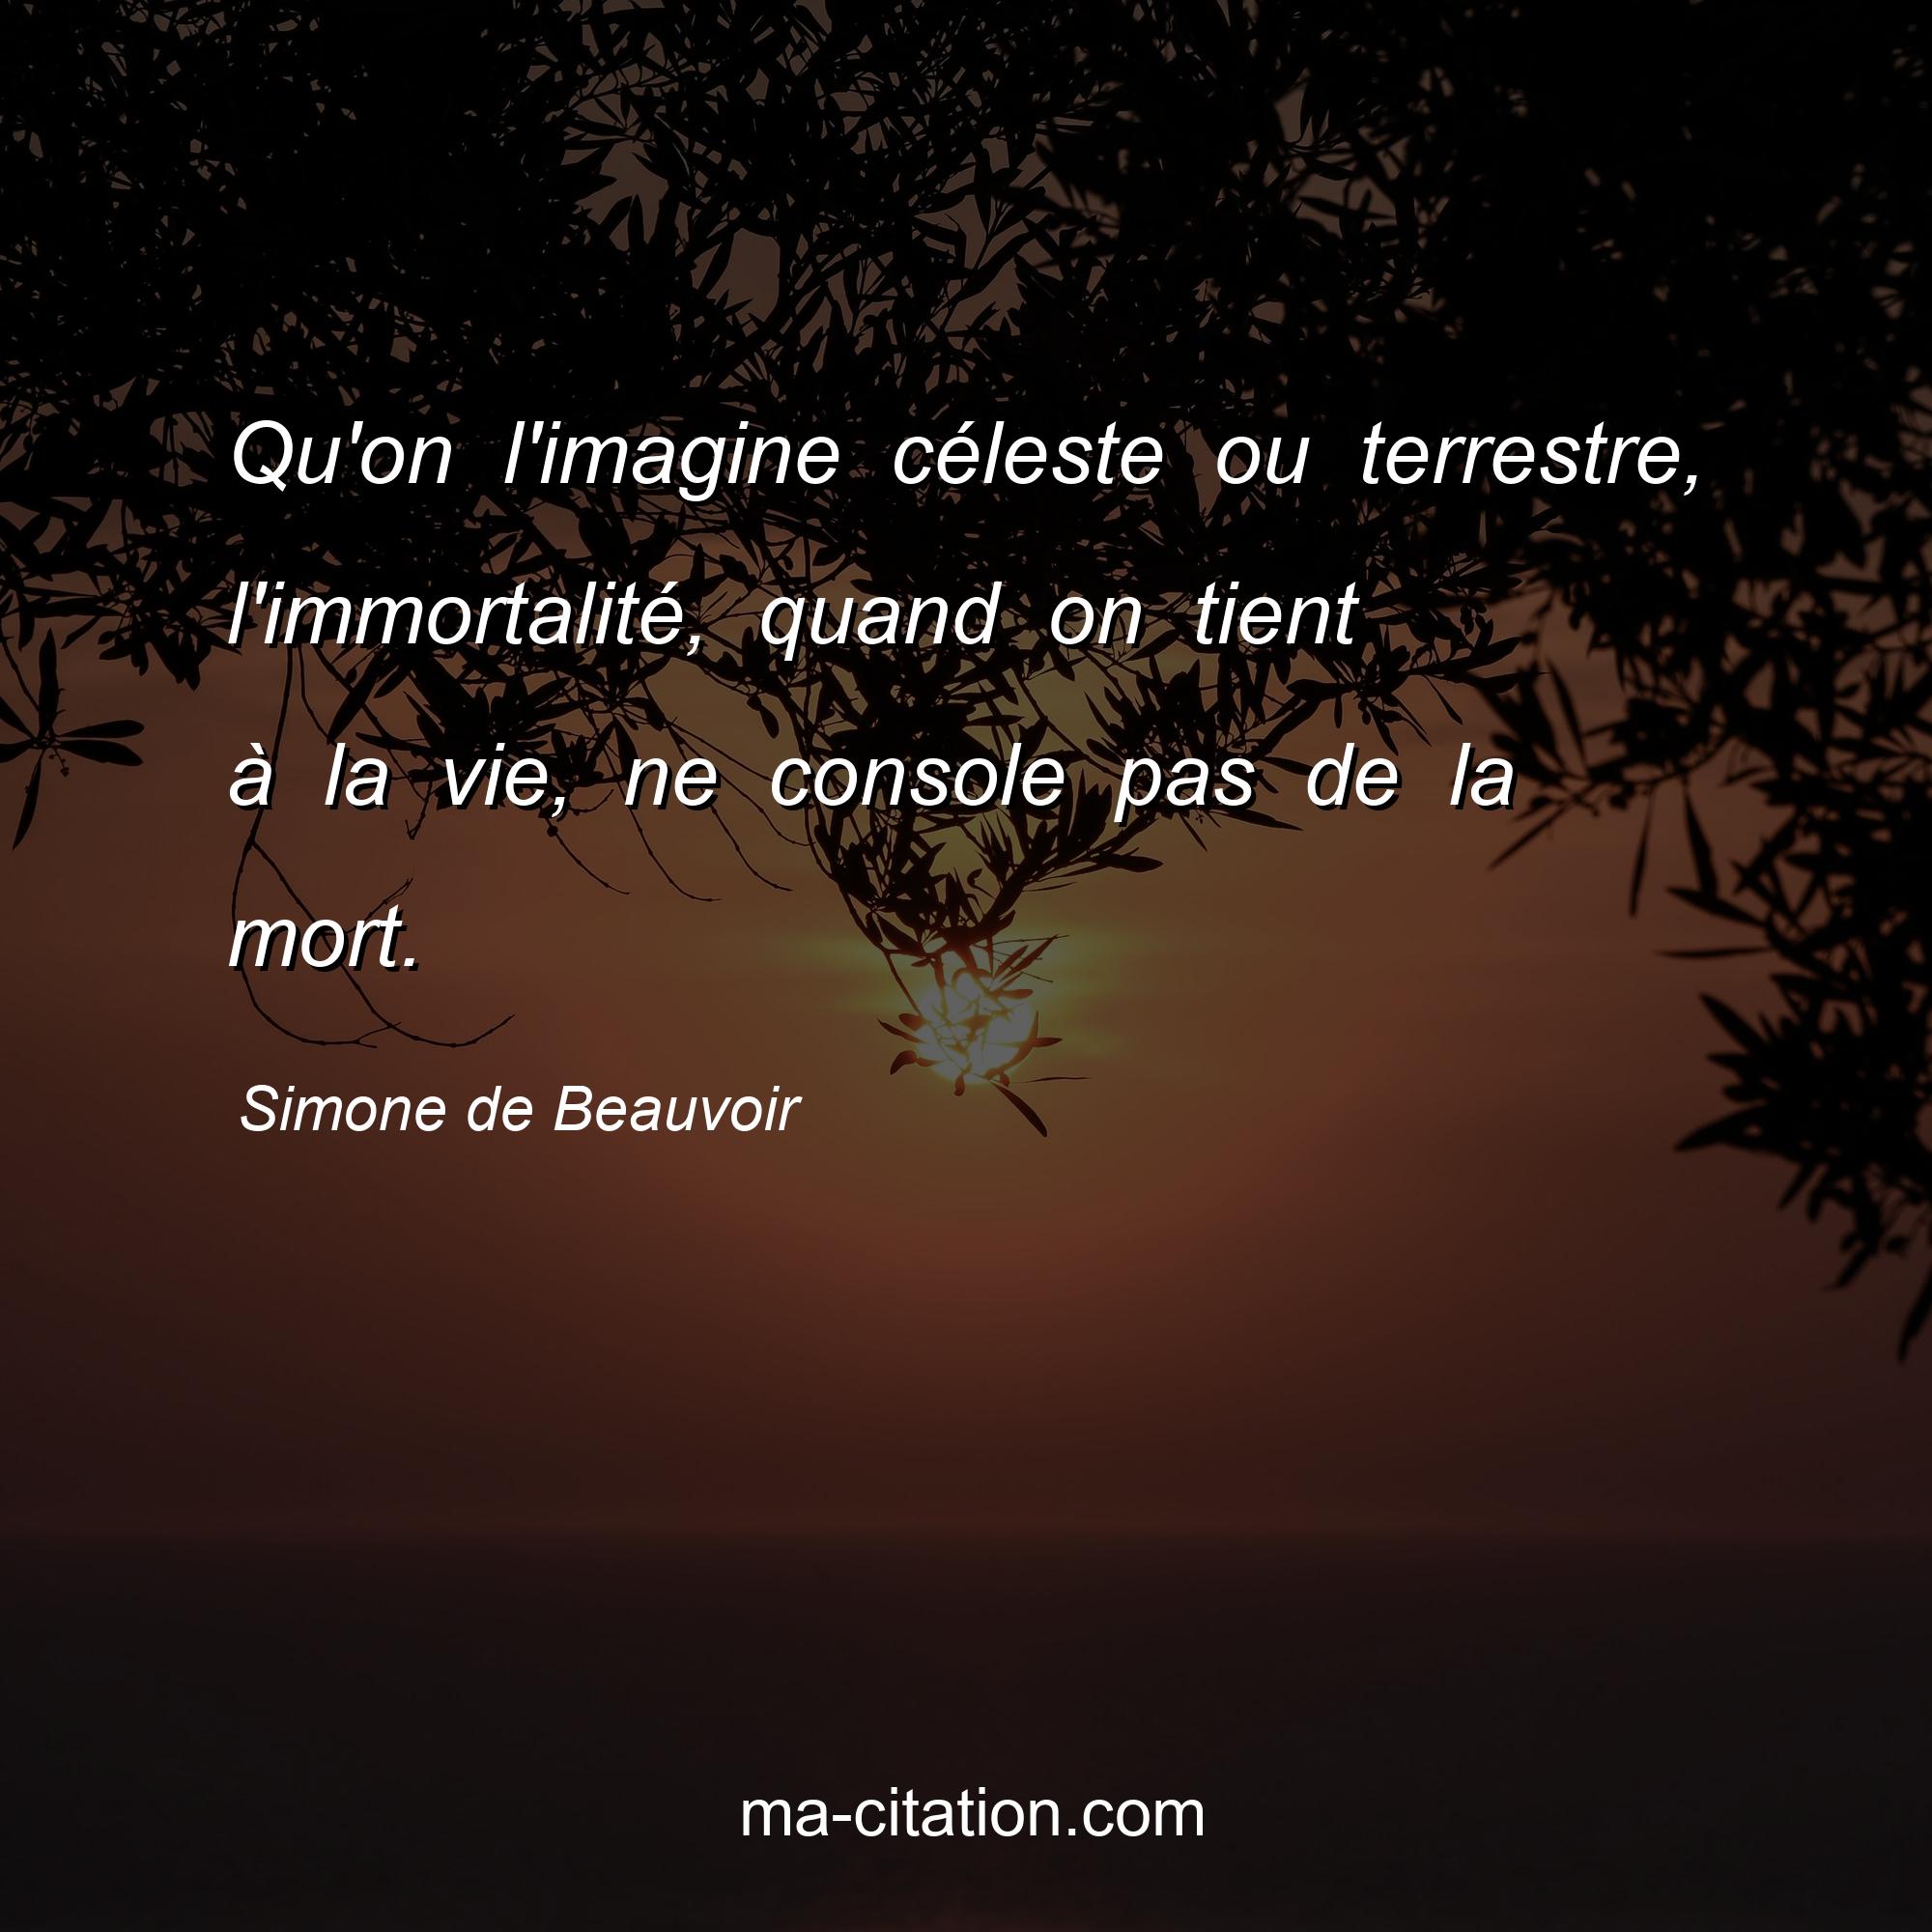 Simone de Beauvoir : Qu'on l'imagine céleste ou terrestre, l'immortalité, quand on tient à la vie, ne console pas de la mort.